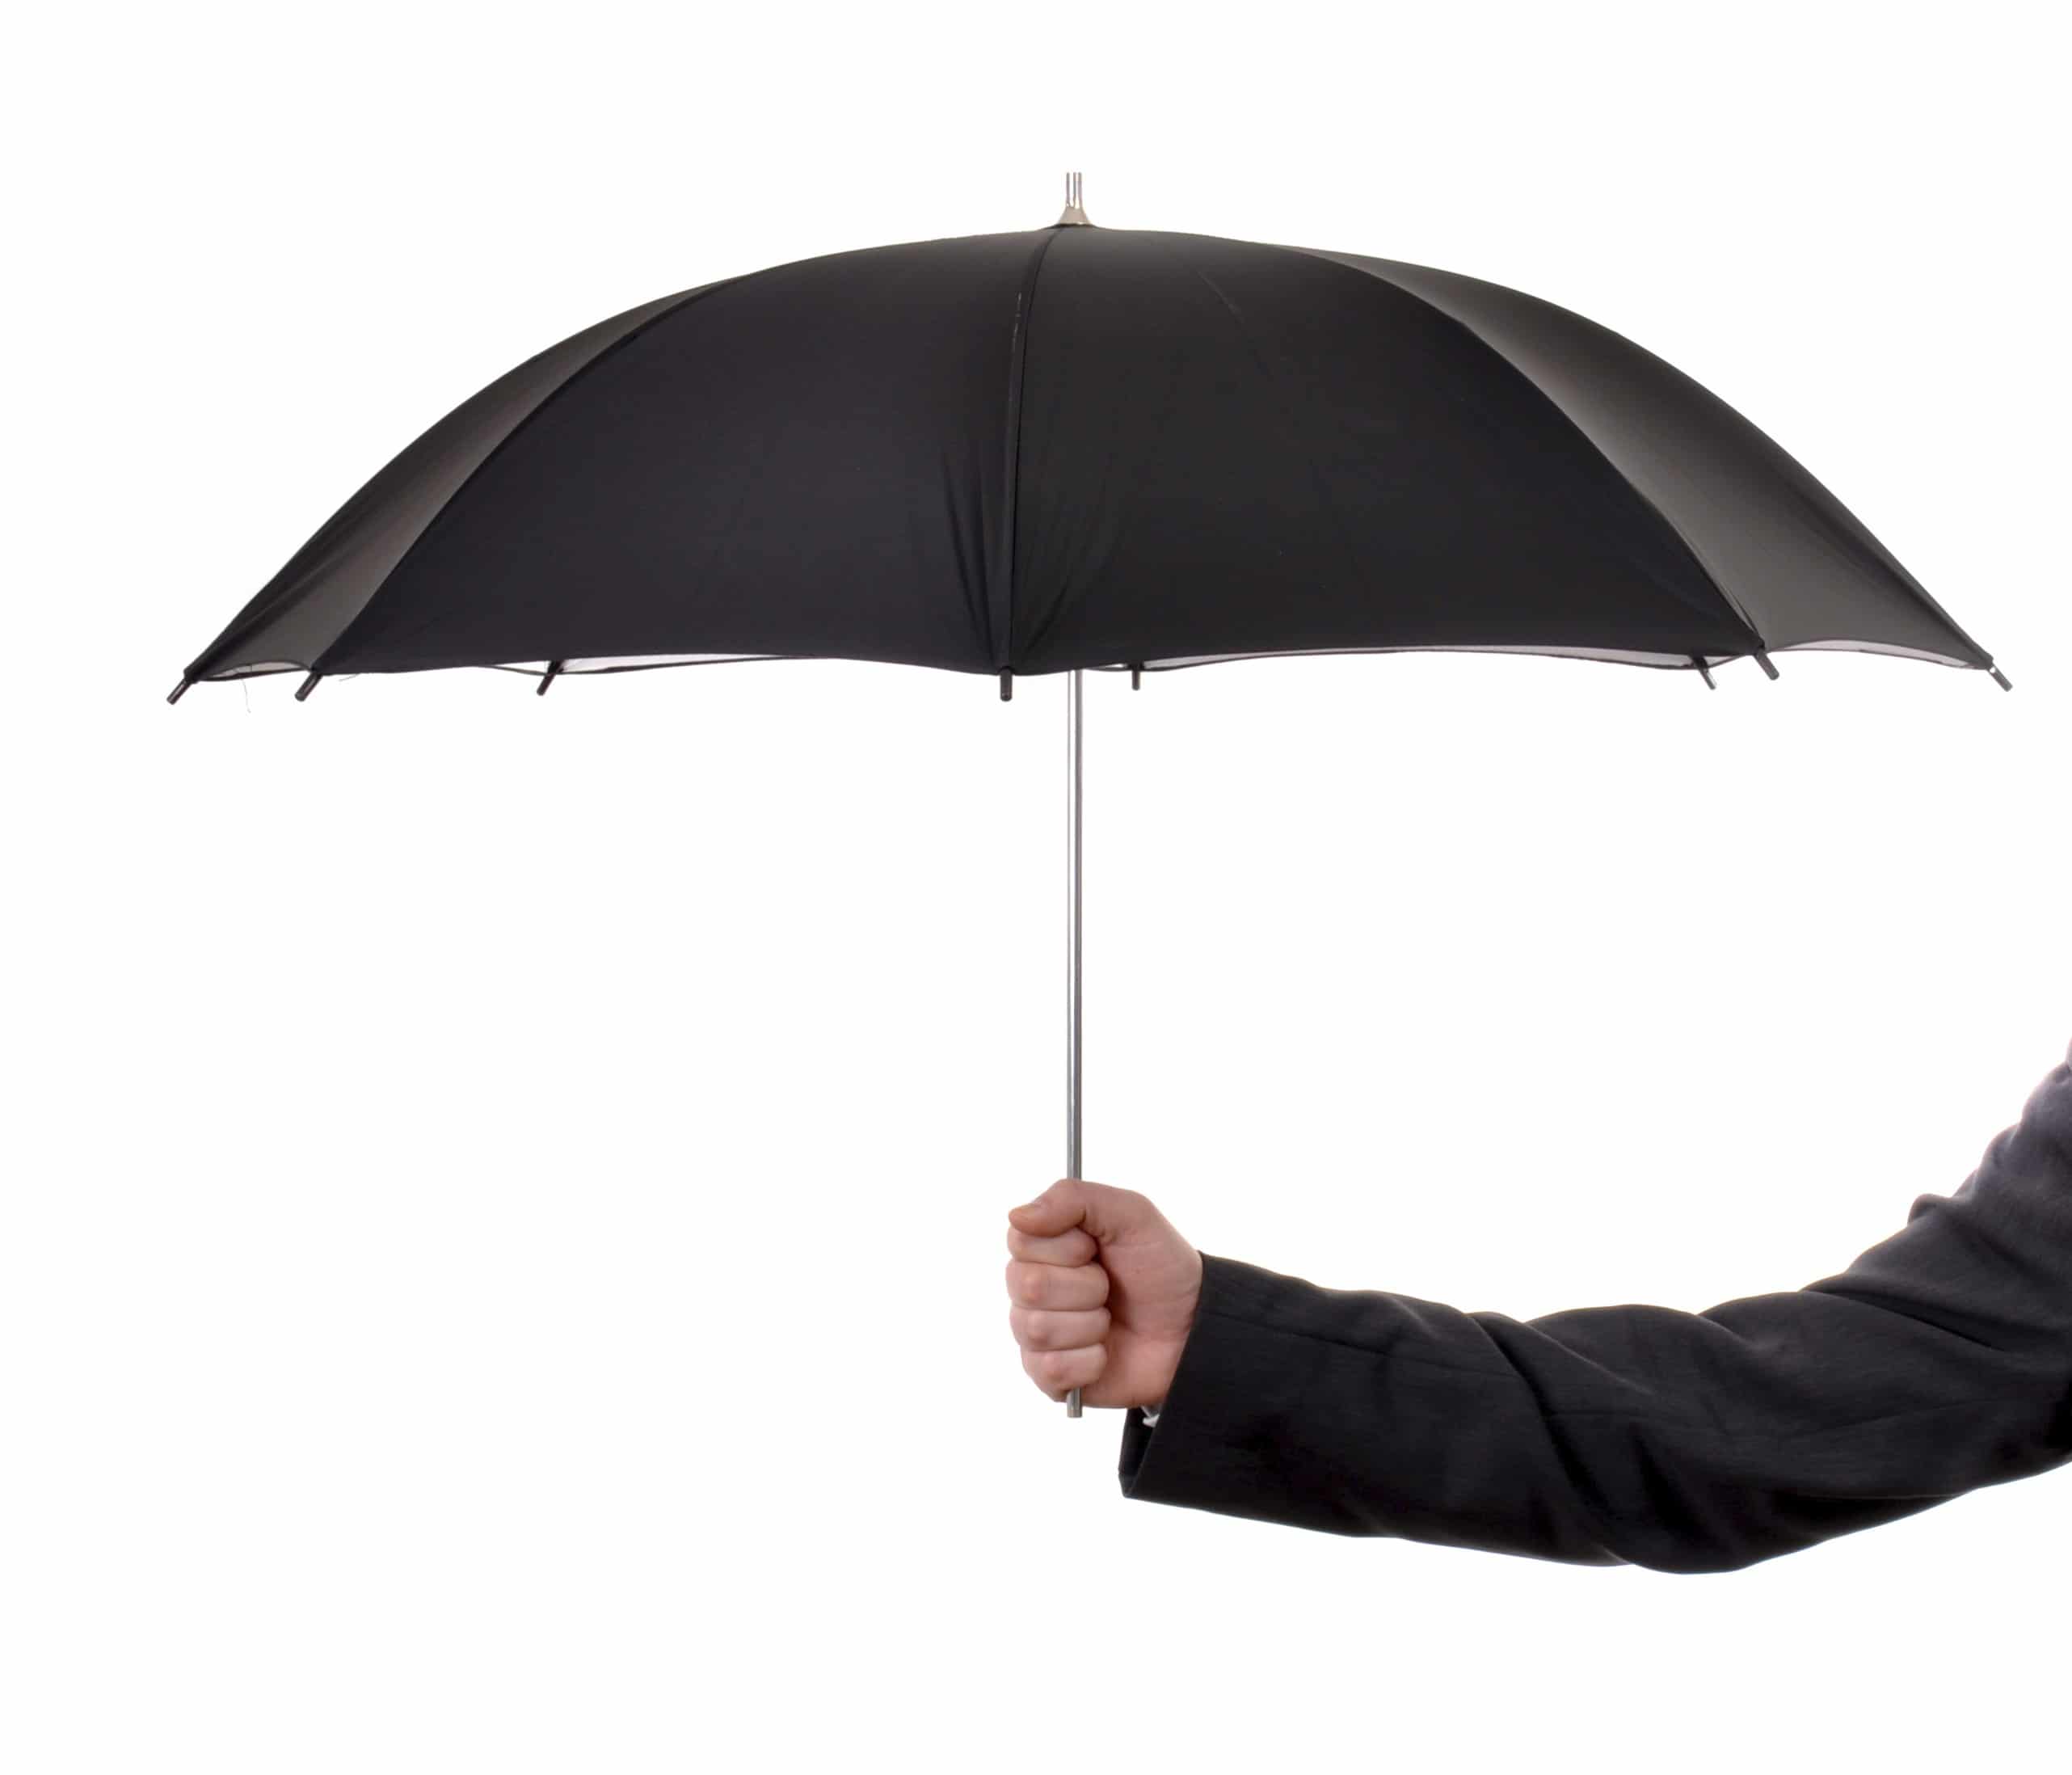 Роль зонтика. Держит зонтик. Мужчина с зонтом. Зонт в руке. Рука держит зонт.